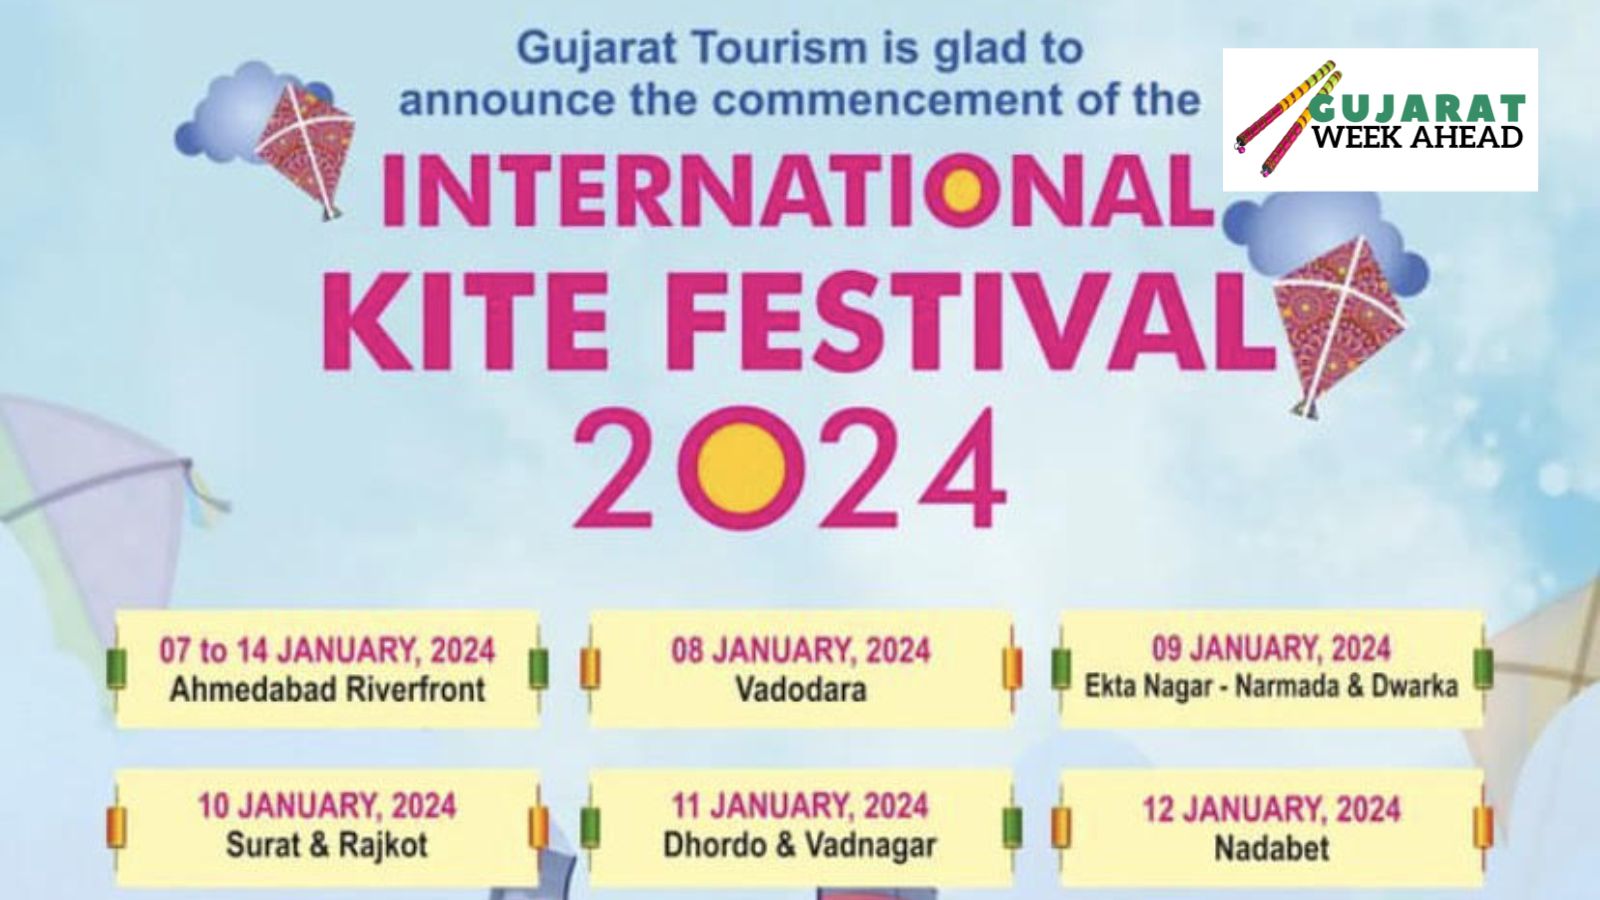 Kite festival 2024 